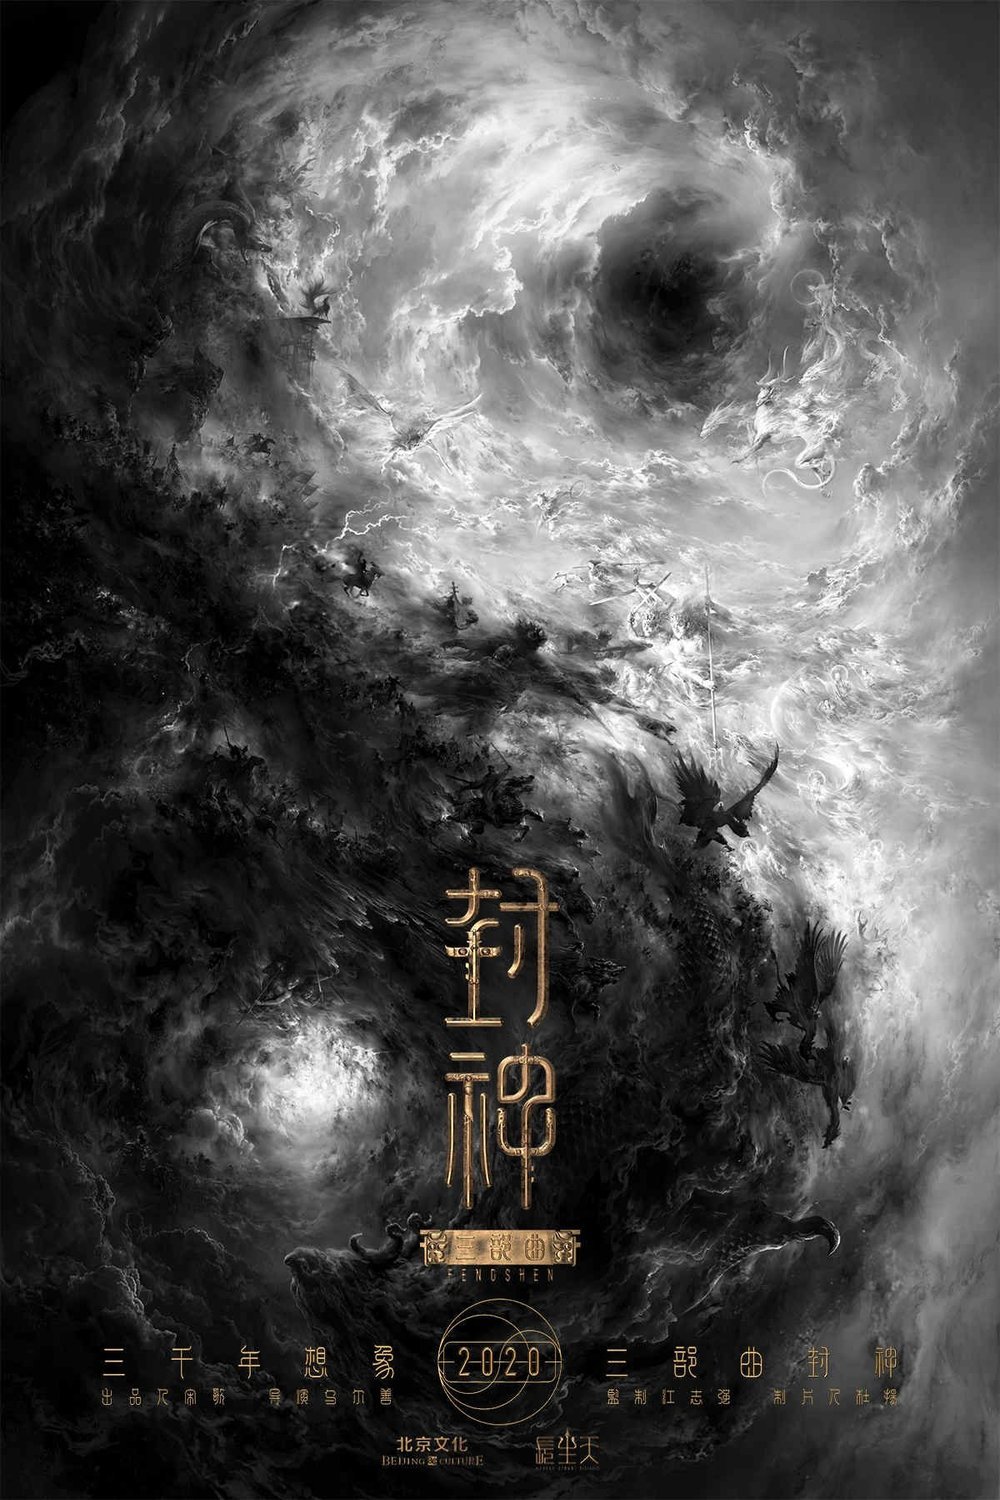 L'affiche originale du film Creation of the Gods I: Kingdom of Storms en mandarin